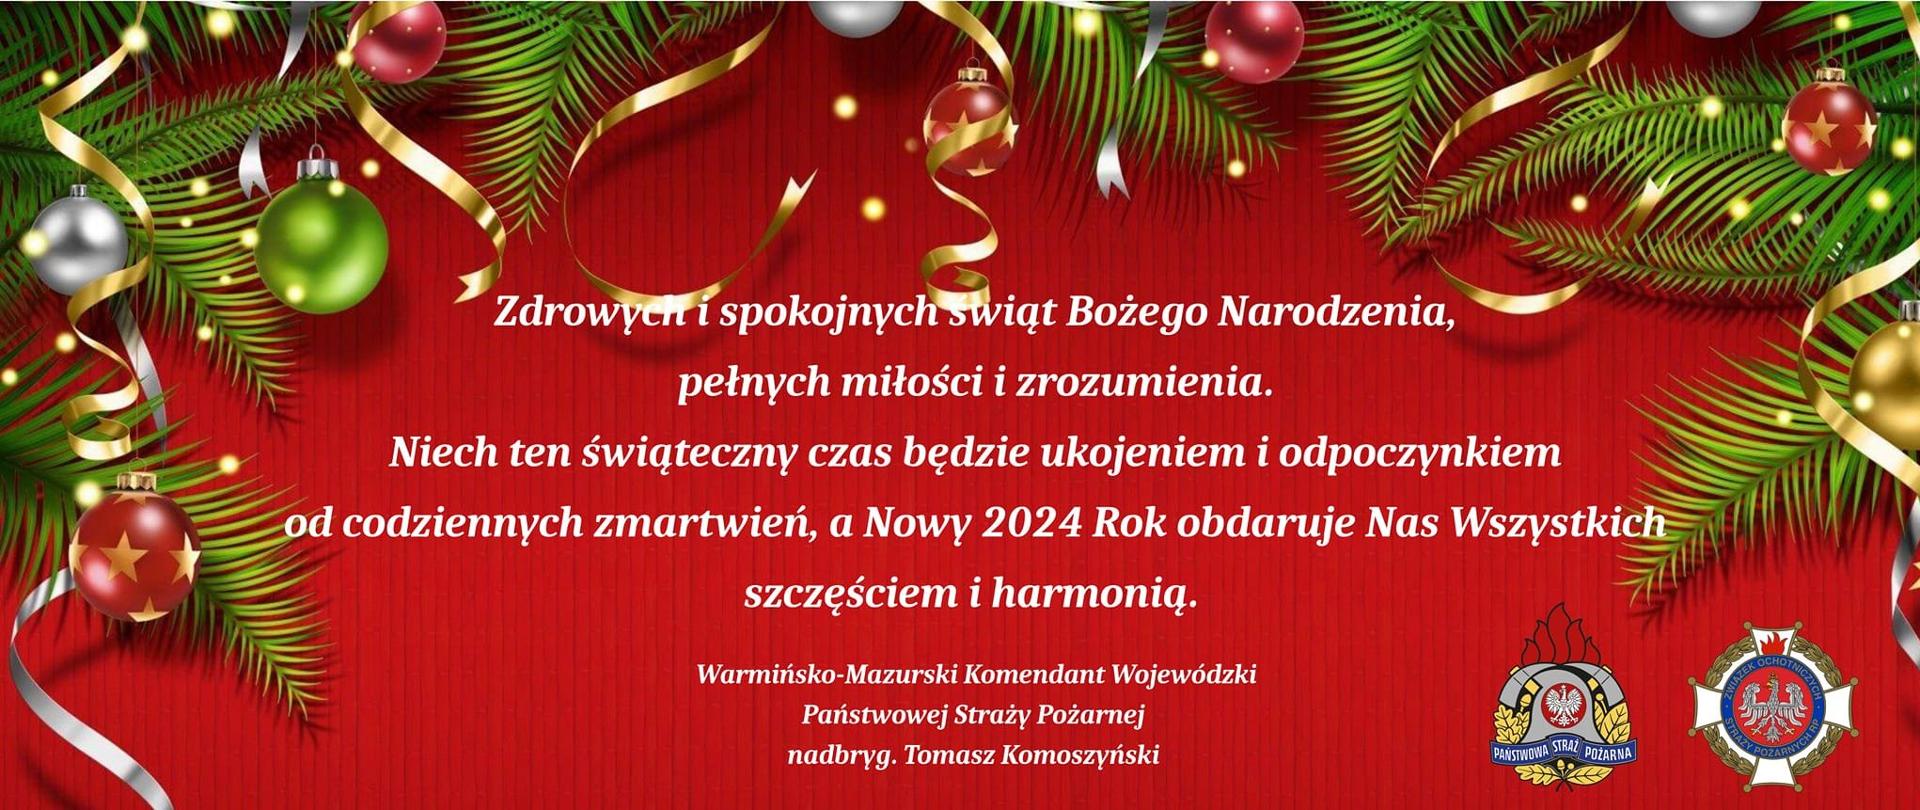 Życzenia świąteczne Warmińsko-Mazurskiego Komendanta Wojewódzkiego PSP nadbryg. Tomasza Komoszyńskiego